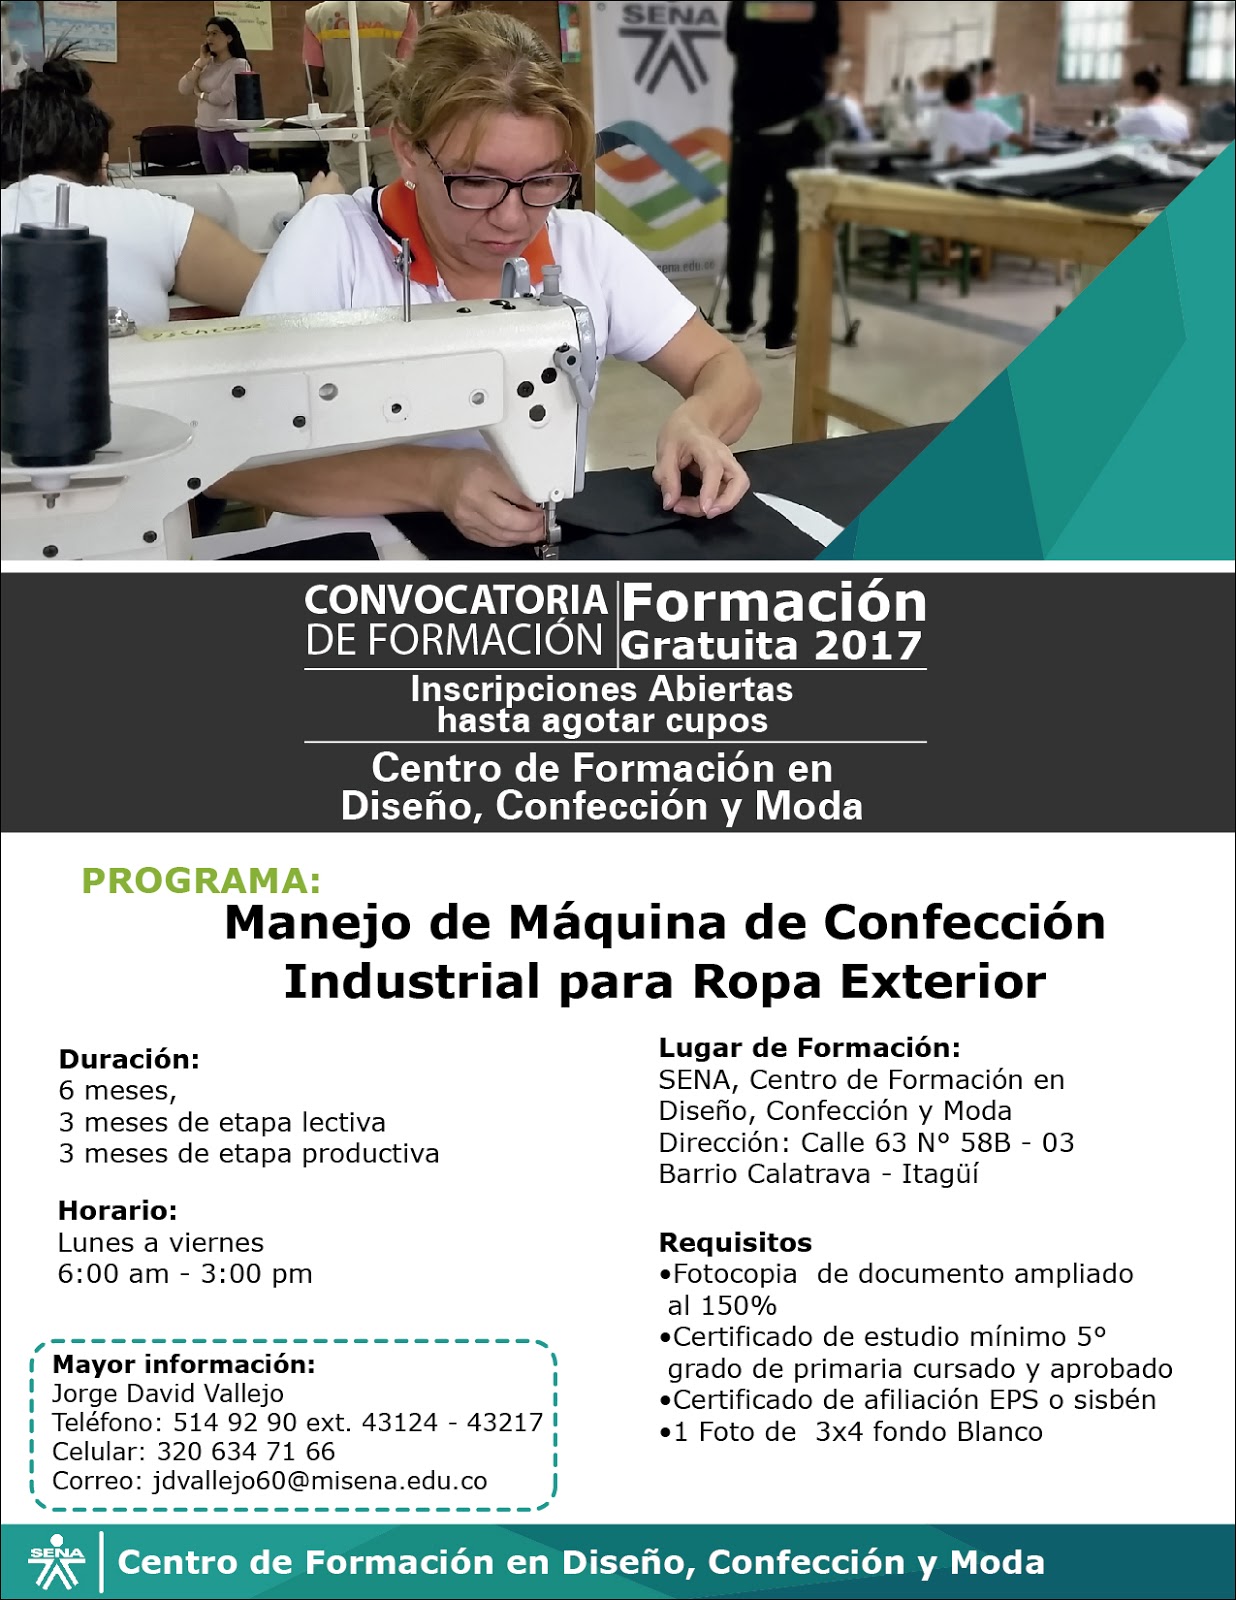 Centro de Formación en Diseño, Confección y Moda - SENA Regional Antioquia:  Formación Gratuita y de Calidad en manejo de Máquinas de Confección  Industrial para Ropa Exterior